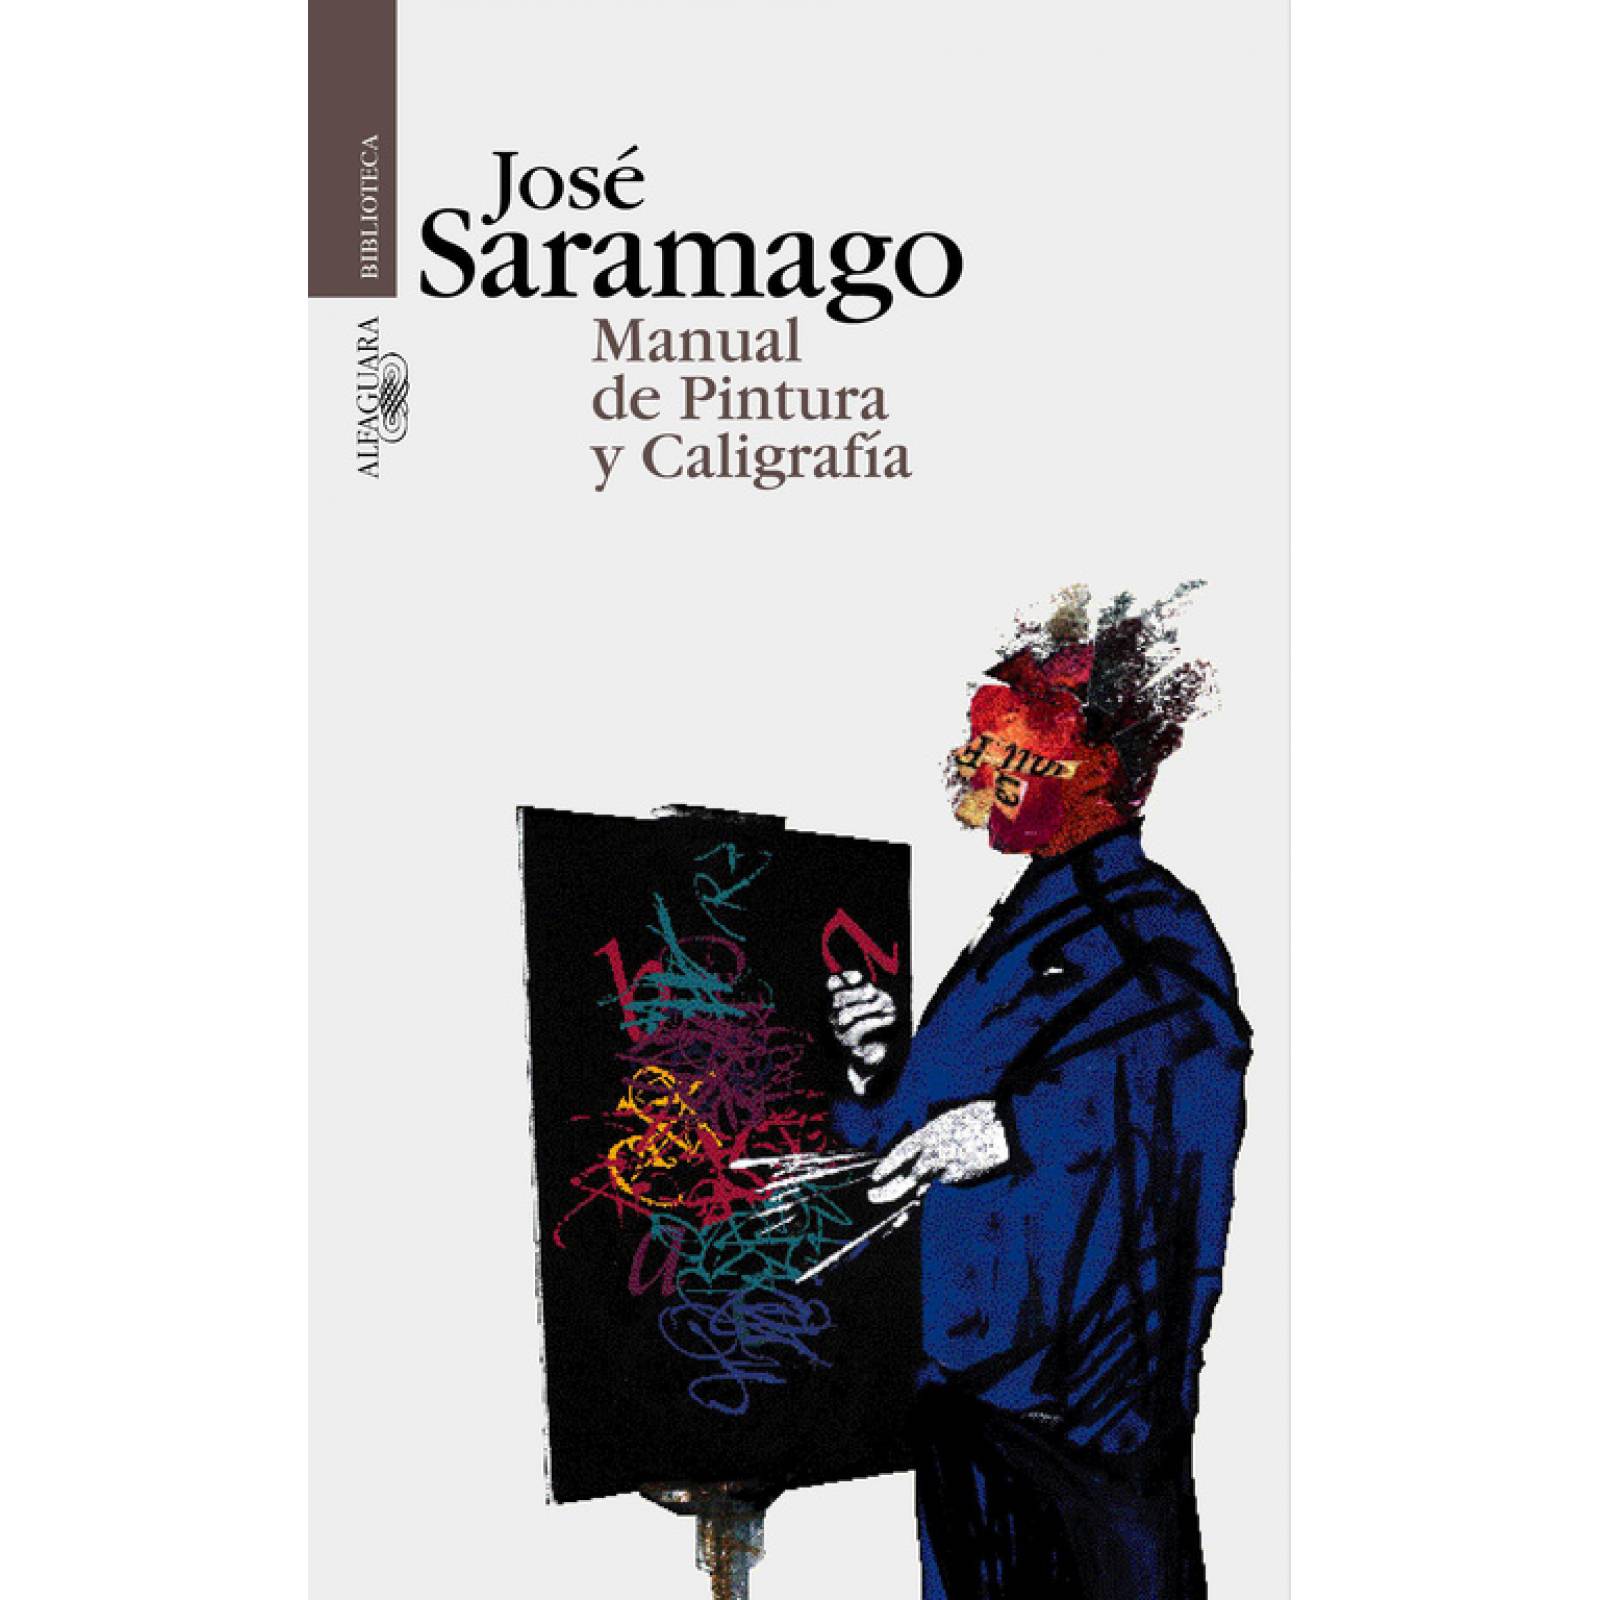 Manual de pintura y caligrafíaAutorSaramago, José